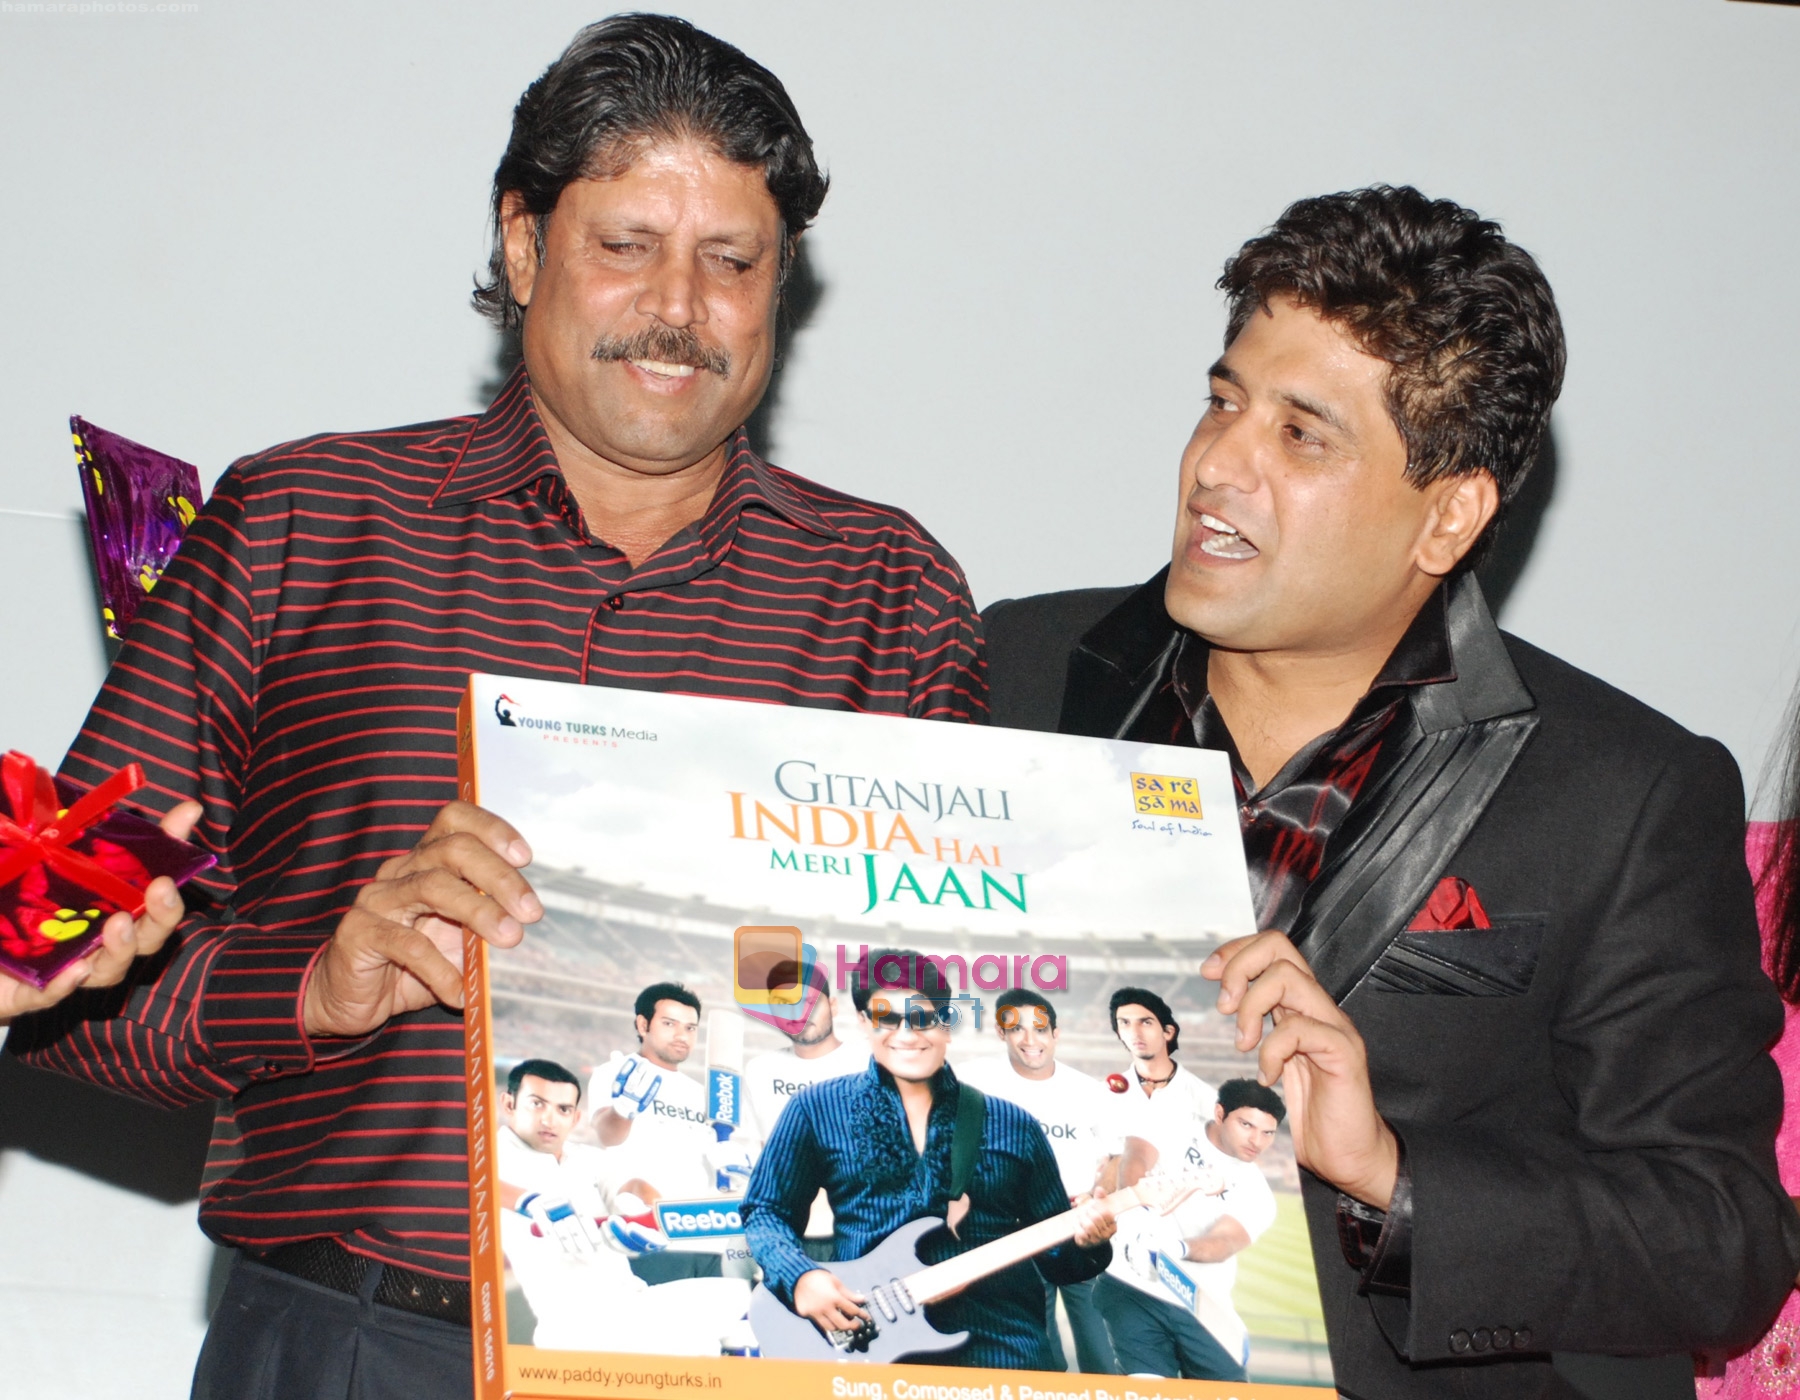 Kapil-&-Padam at the press release of India Hain Meri Jaan